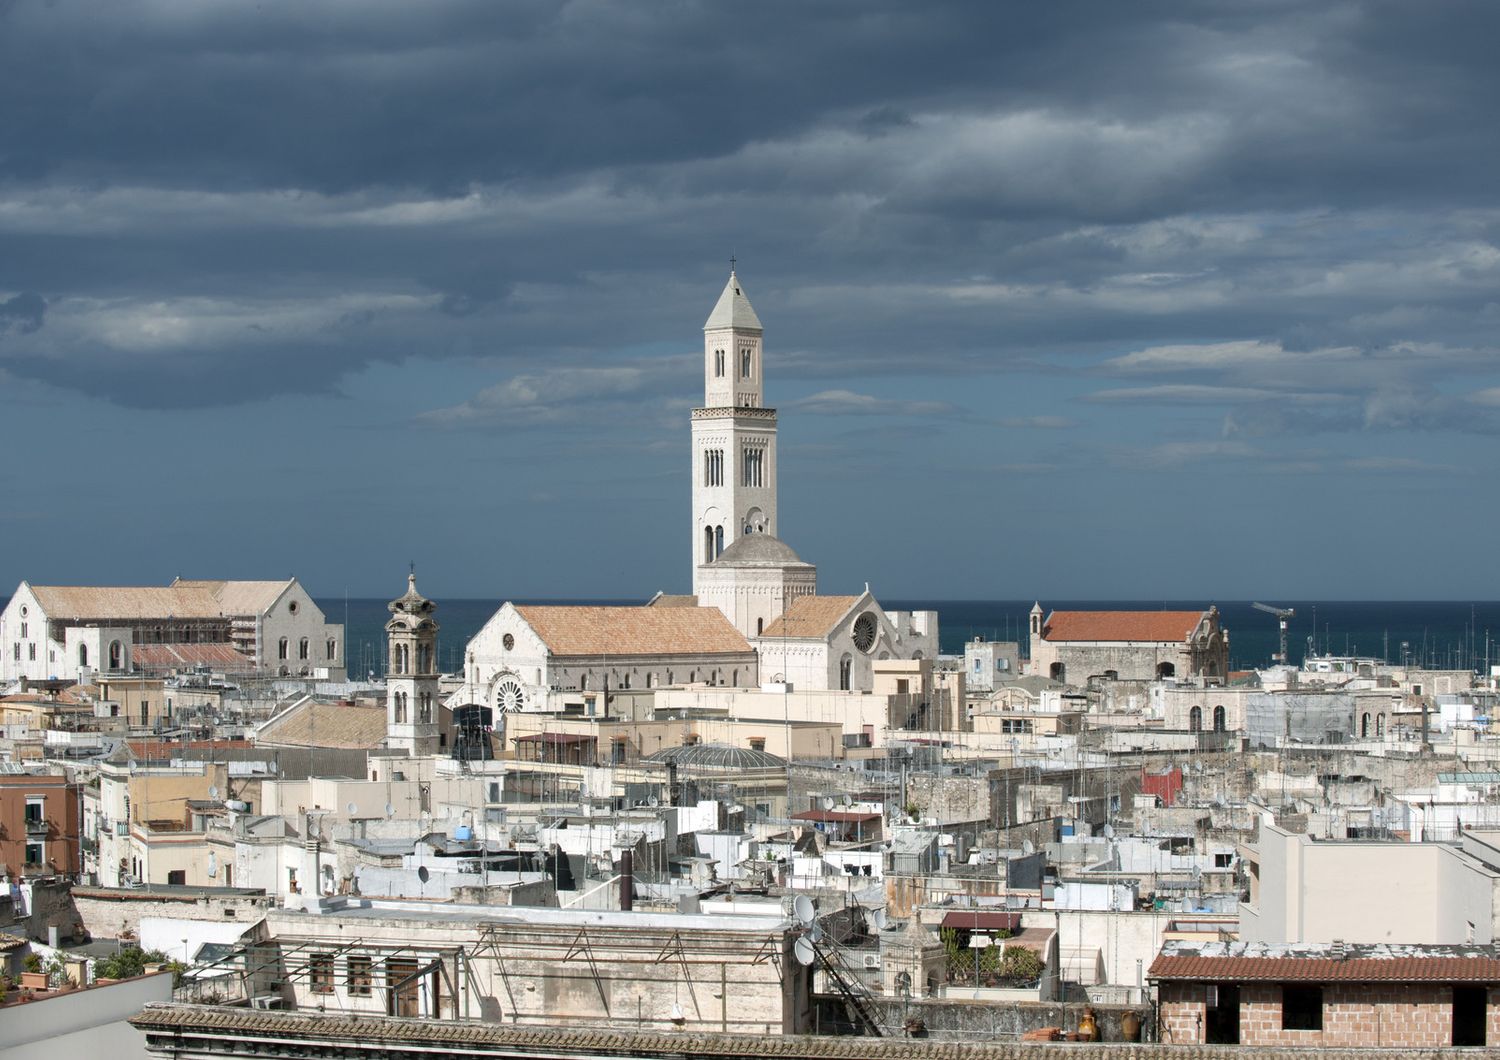 Panoramica di Bari con la cattedrale di San Nicola